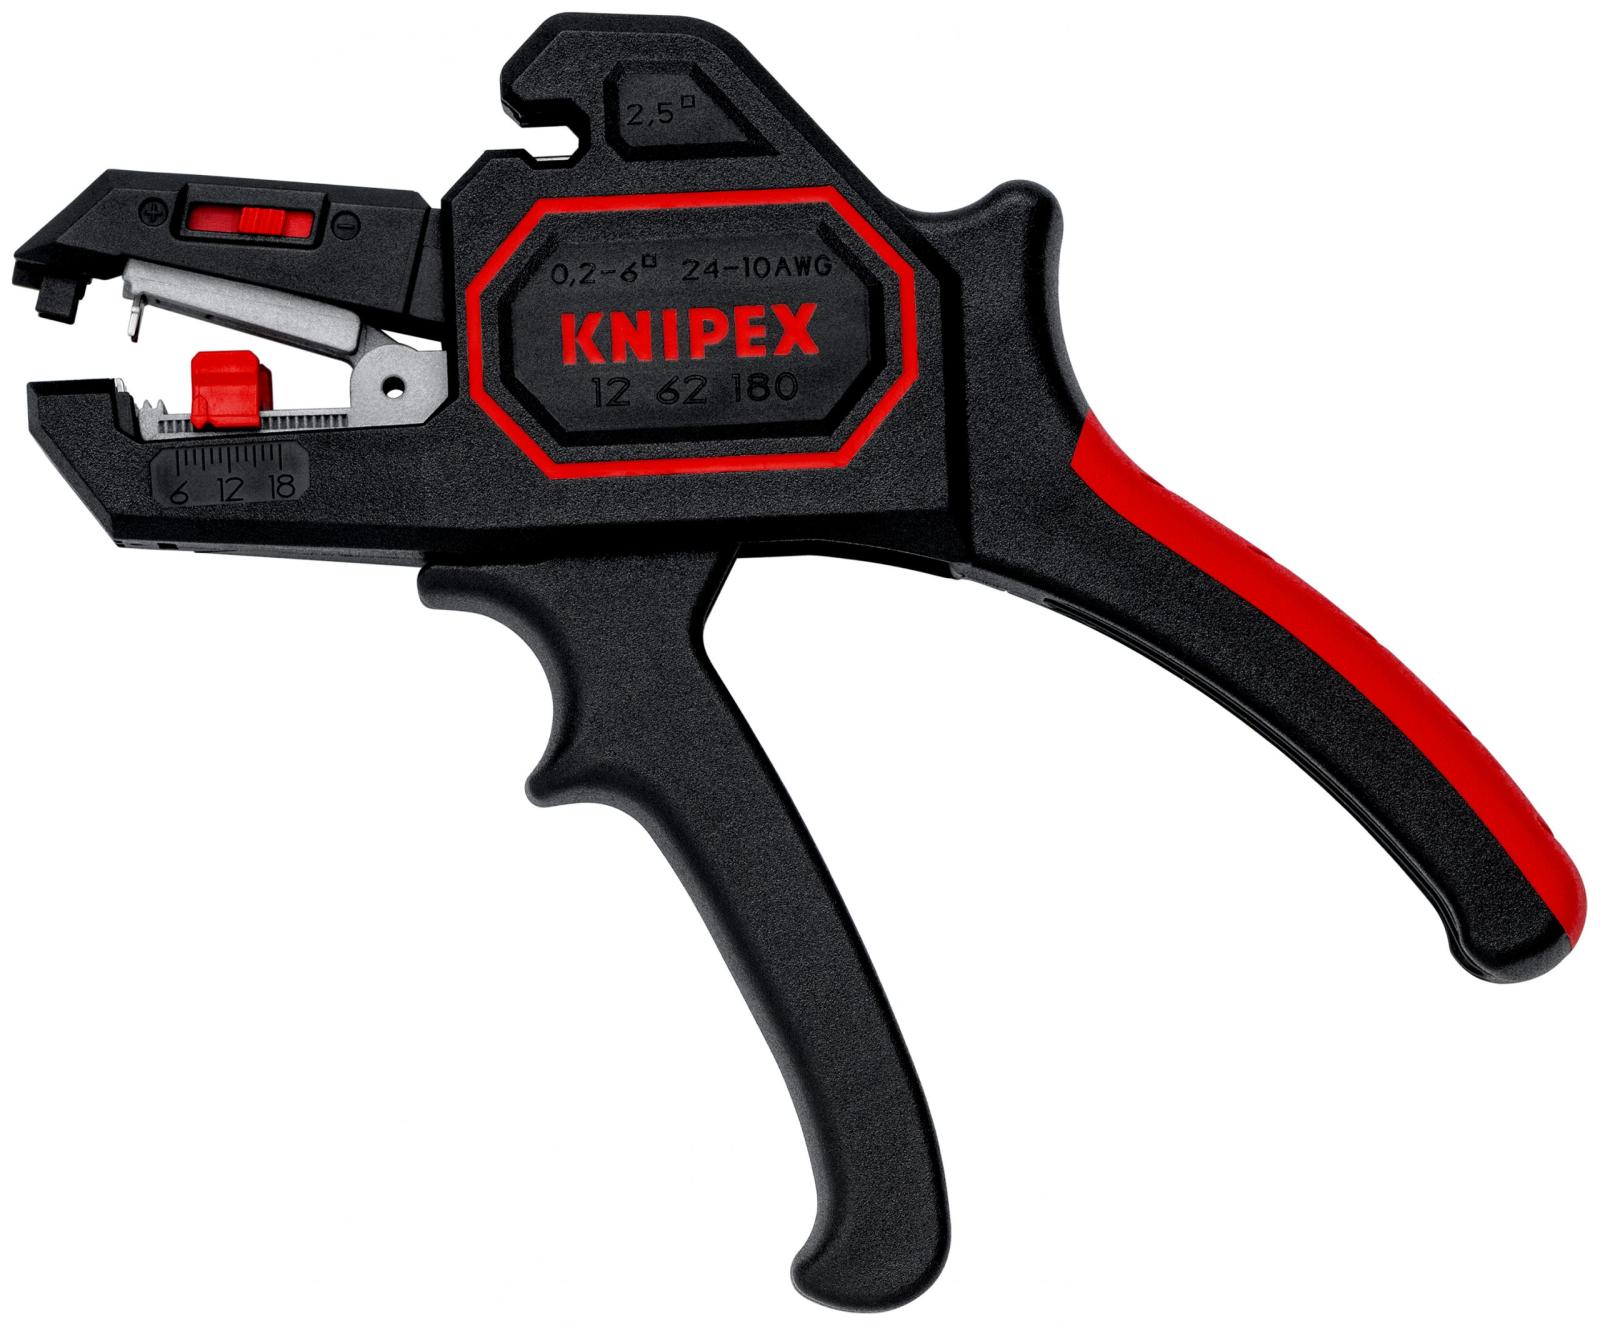 KNIPEX Kliešte odizolovacie automatické 180mm, 0,2-6,0 mm² 12 62 180